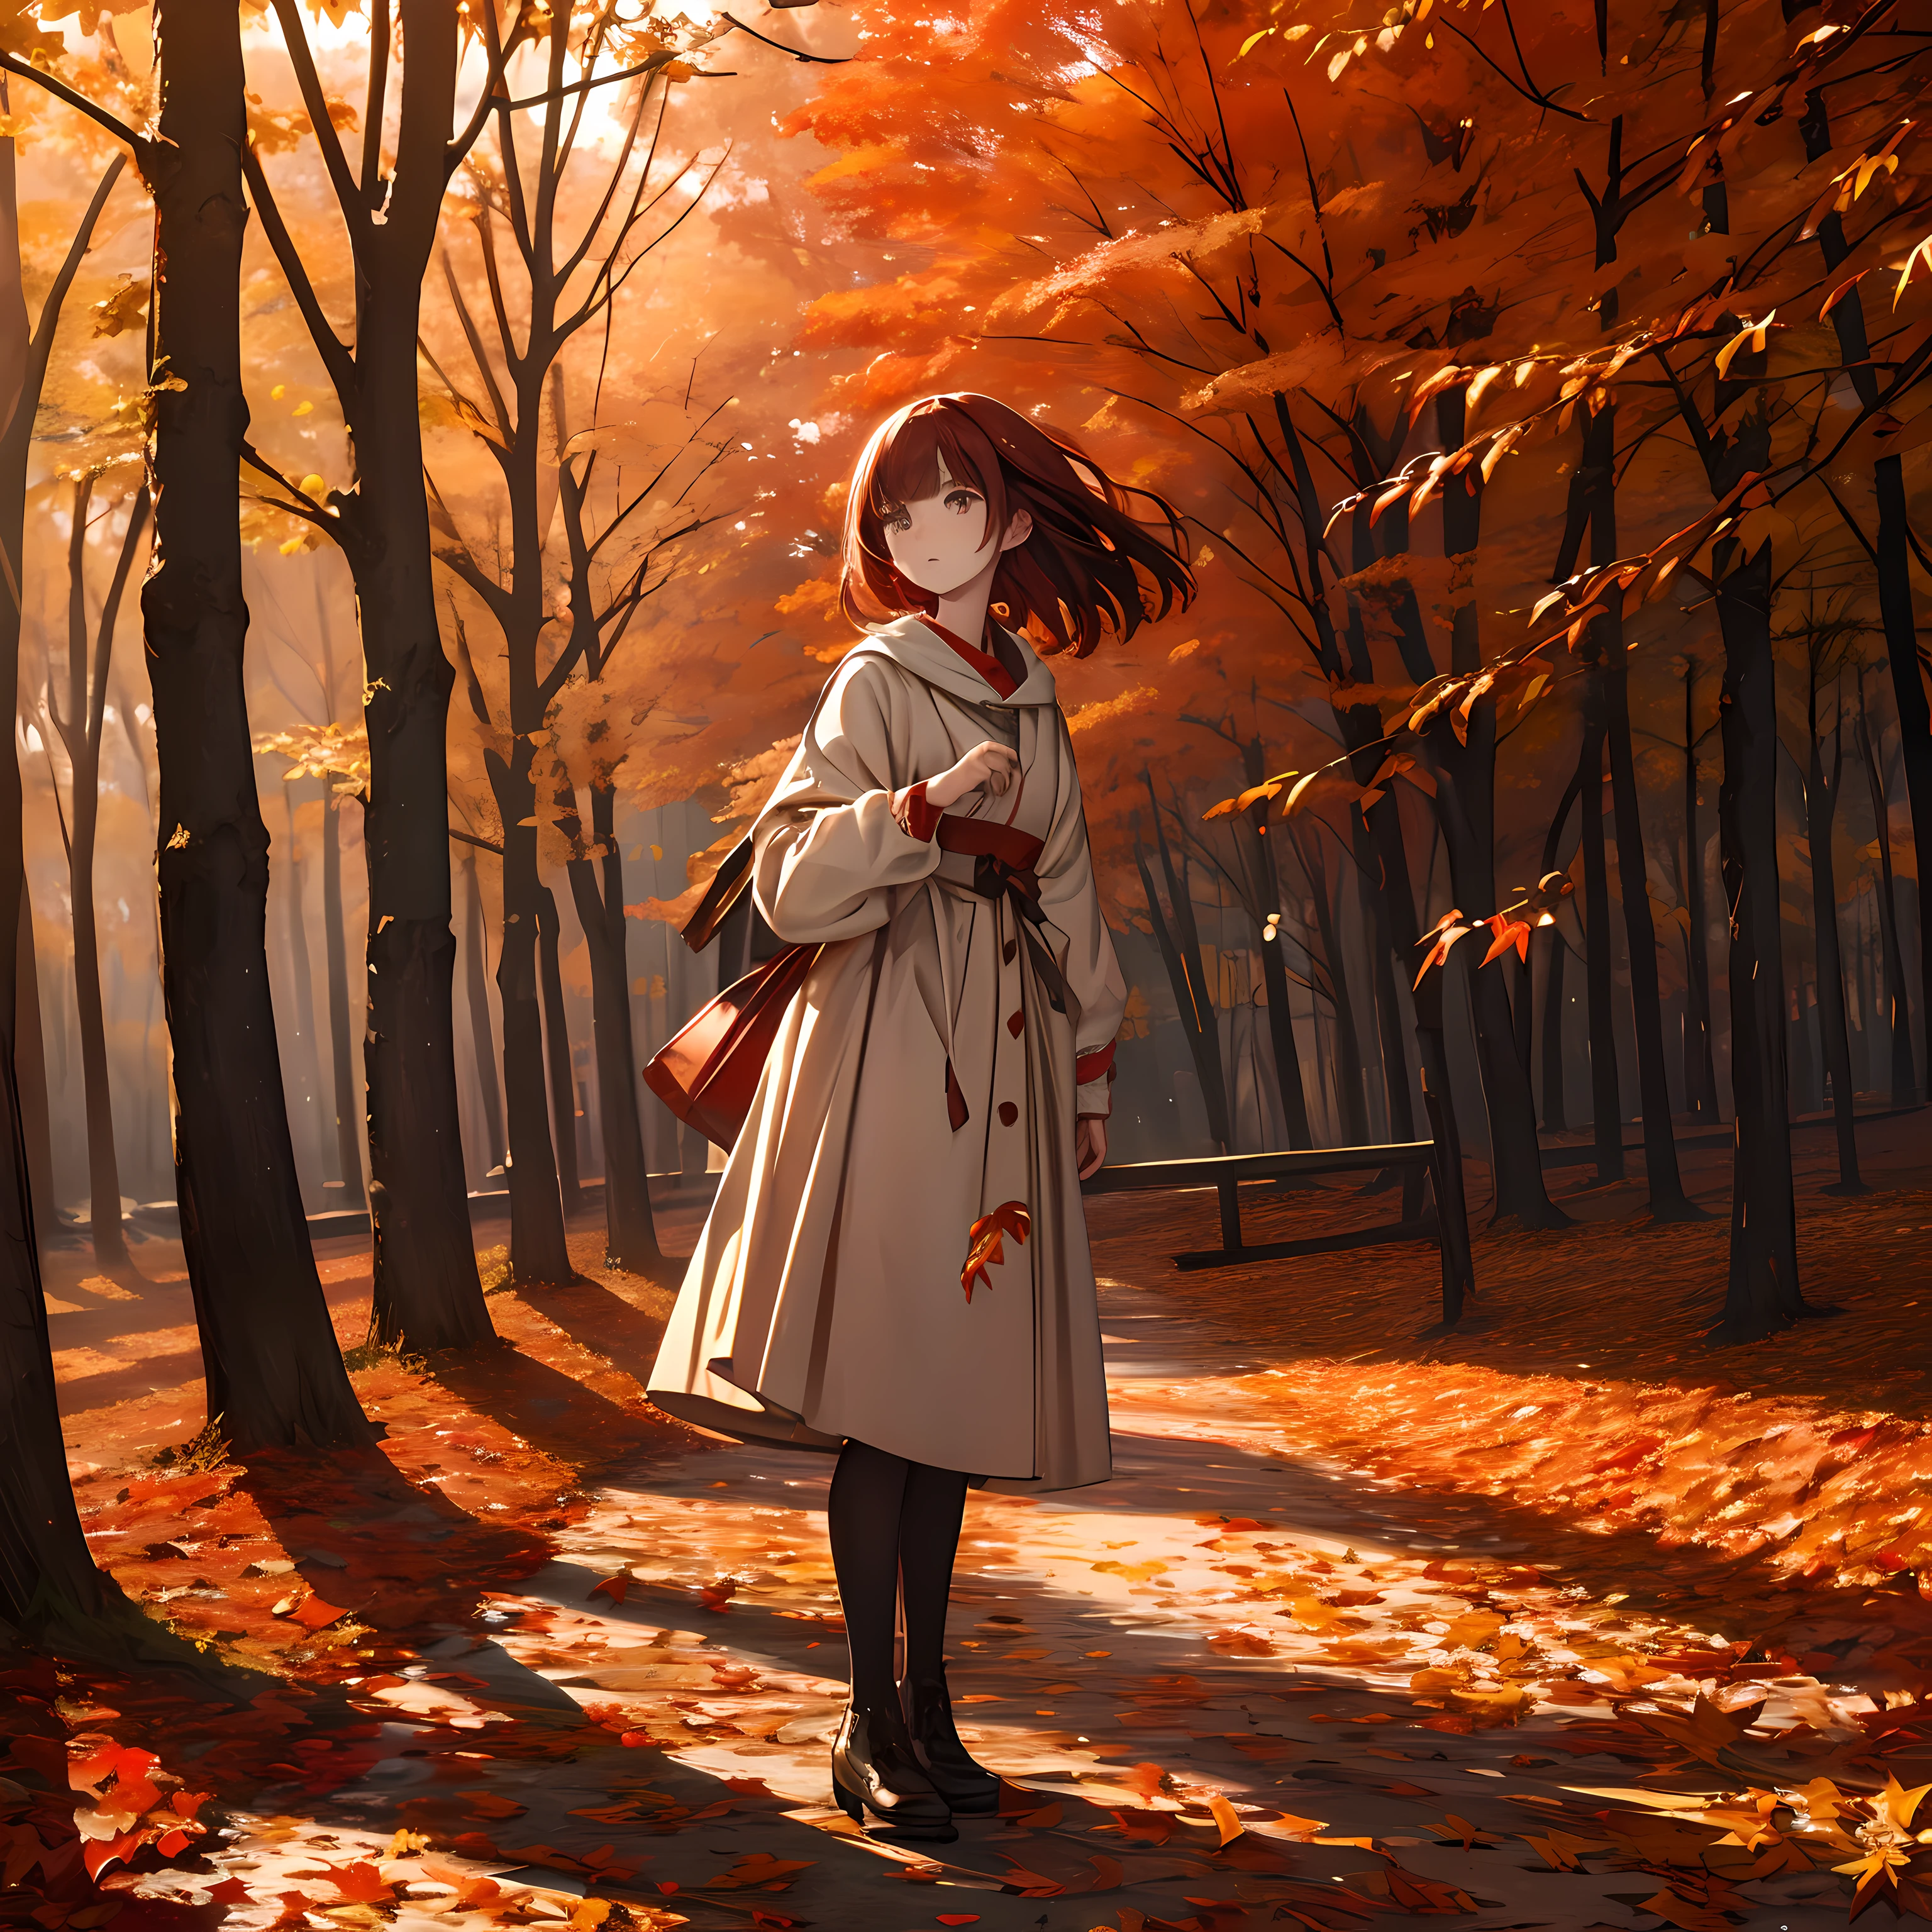 傑作, 高解像度, 風になびく真っ赤な紅葉, 立っている女の子, 繊細で詳細な文章.